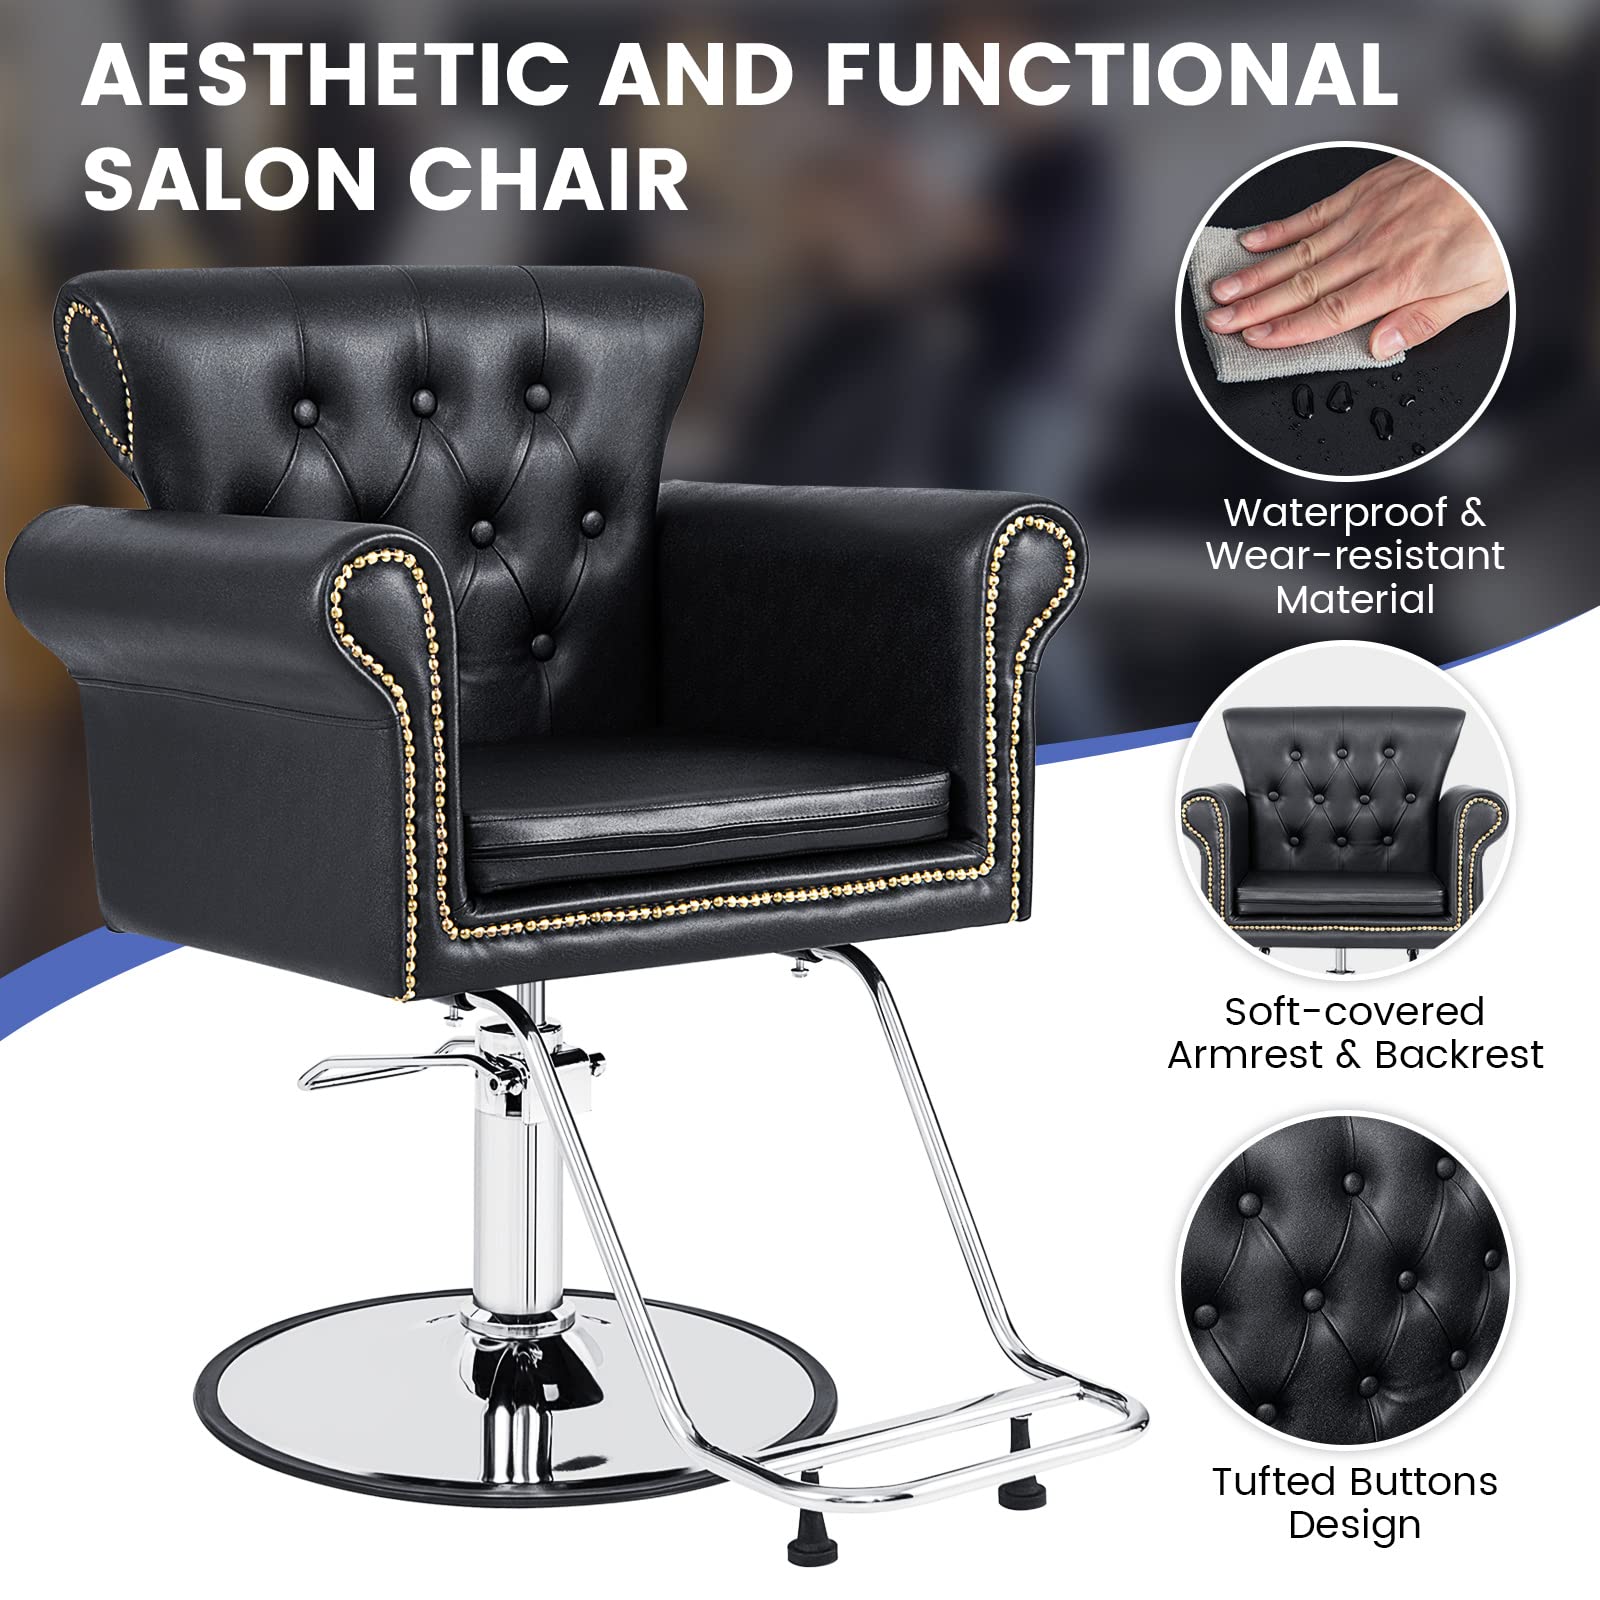 Giantex Salon Chair for Hair Stylist